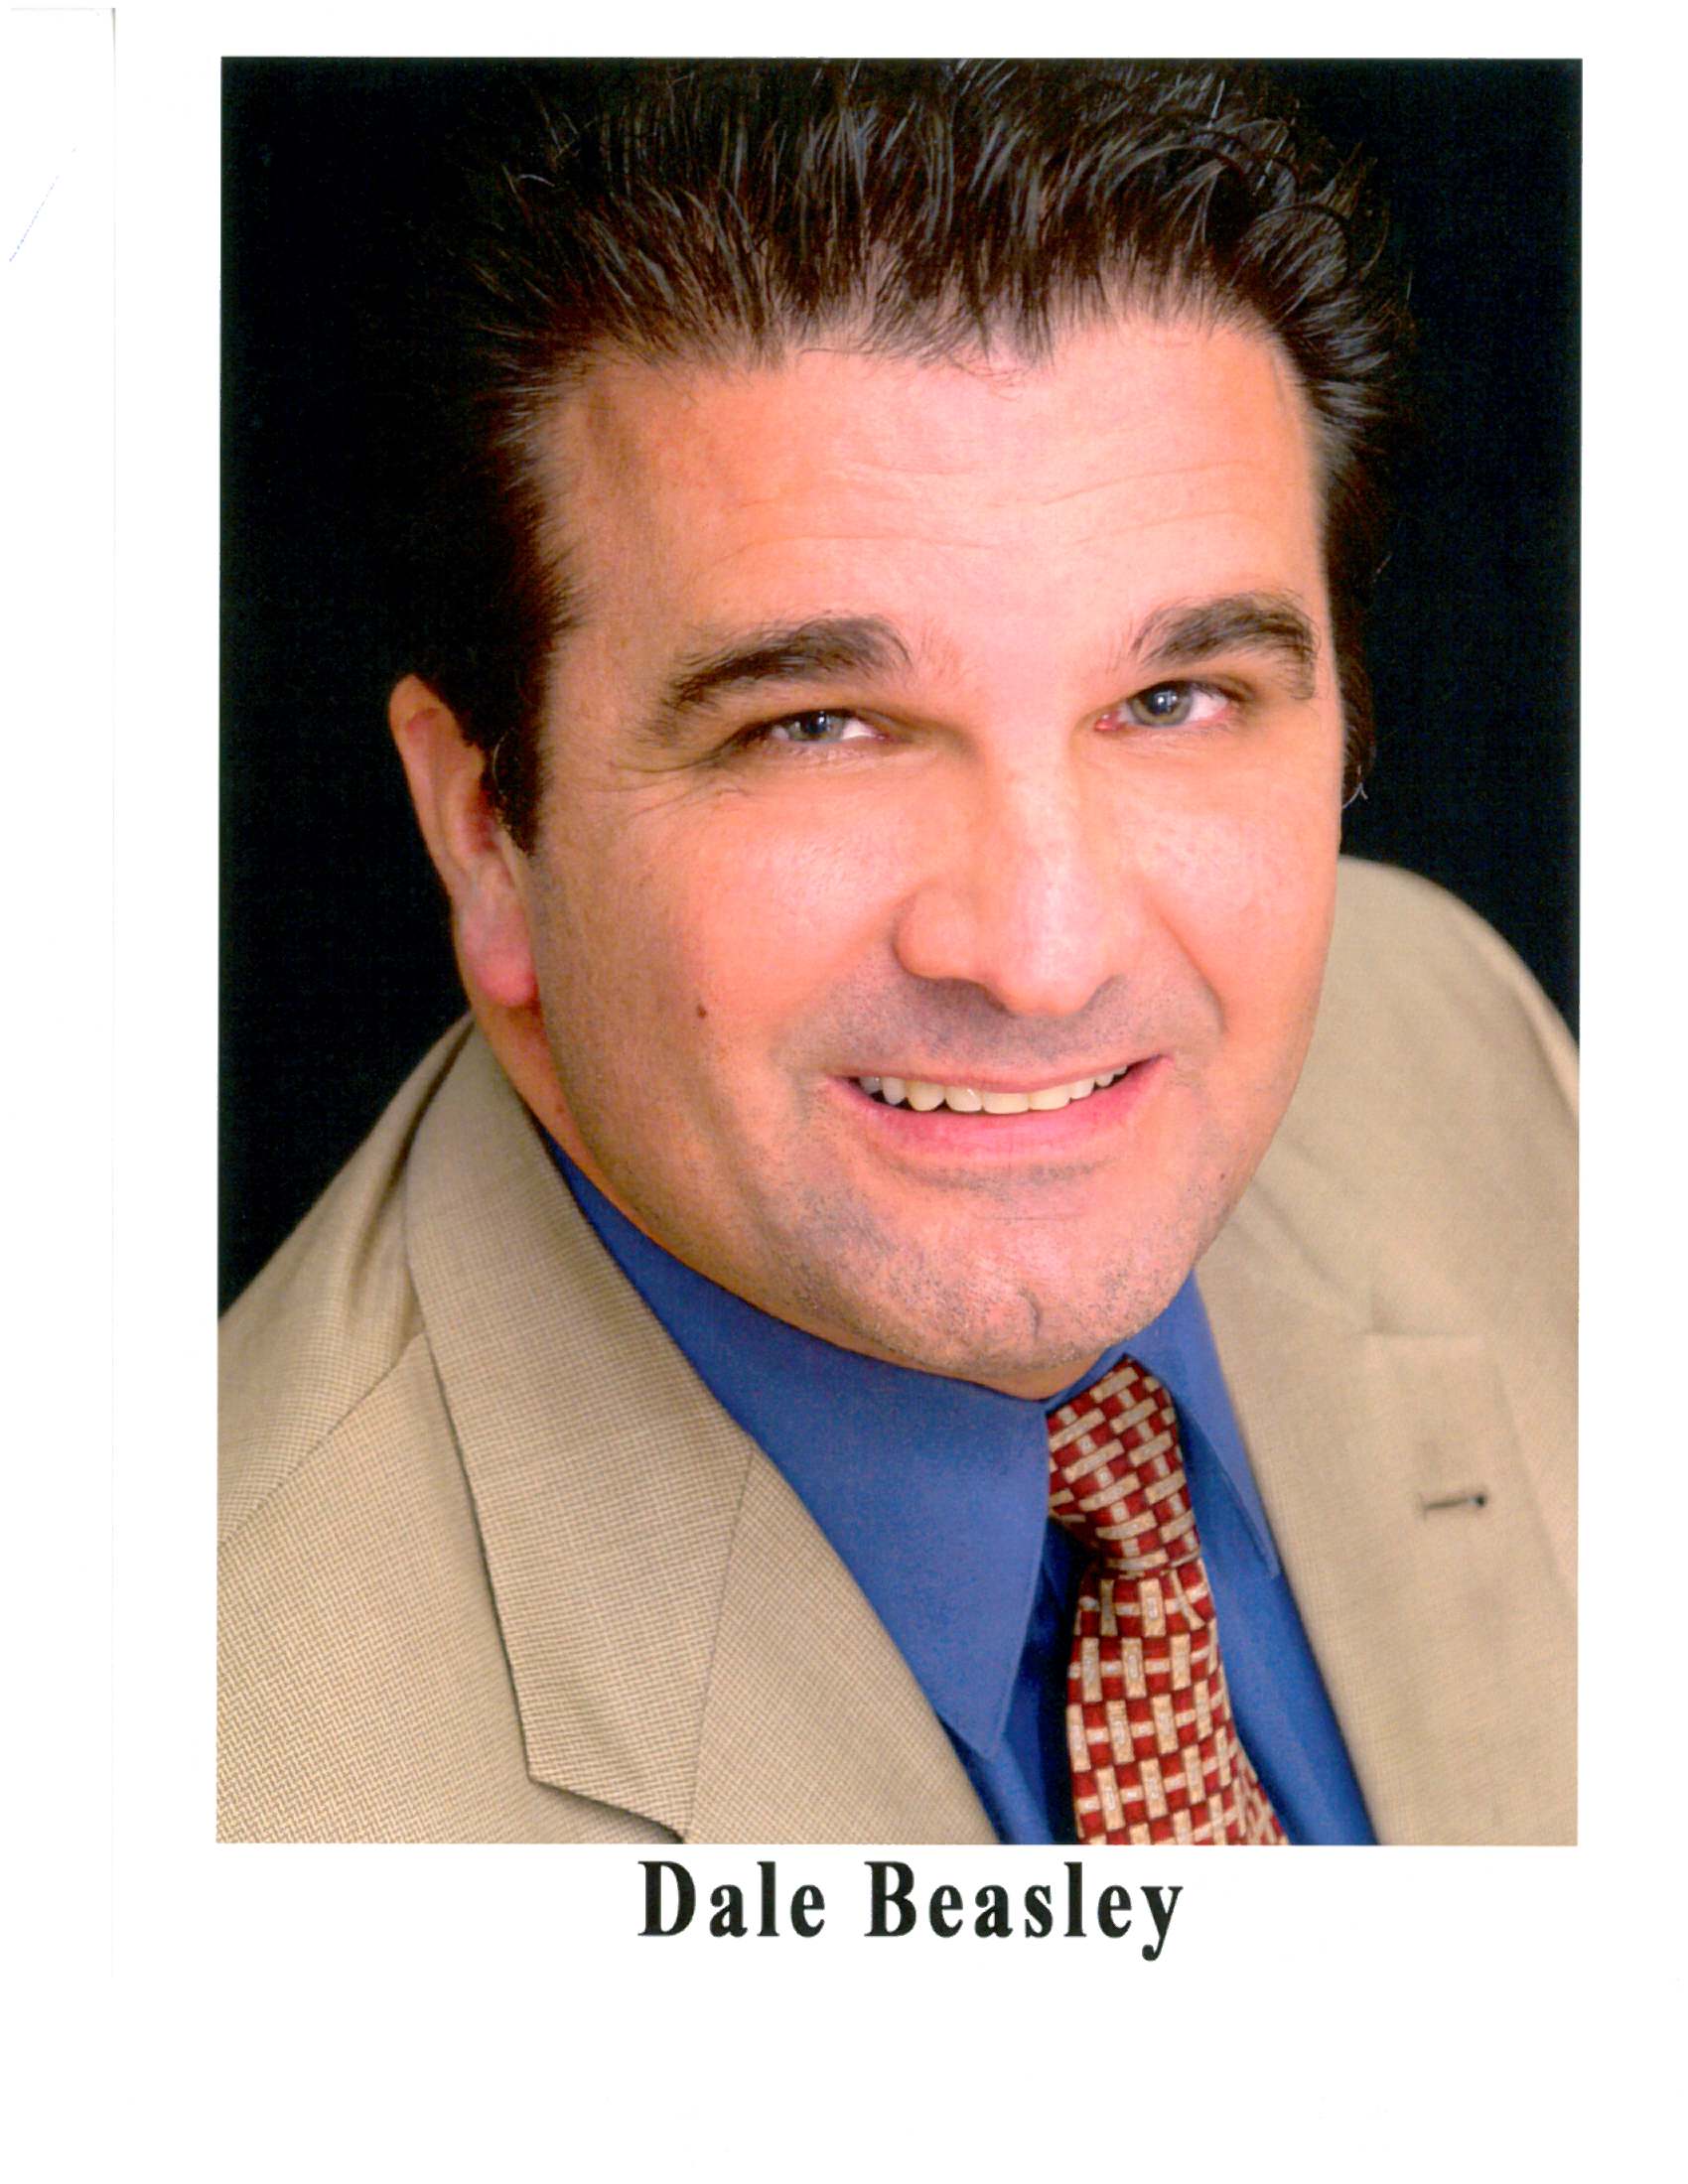 Dale Beasley